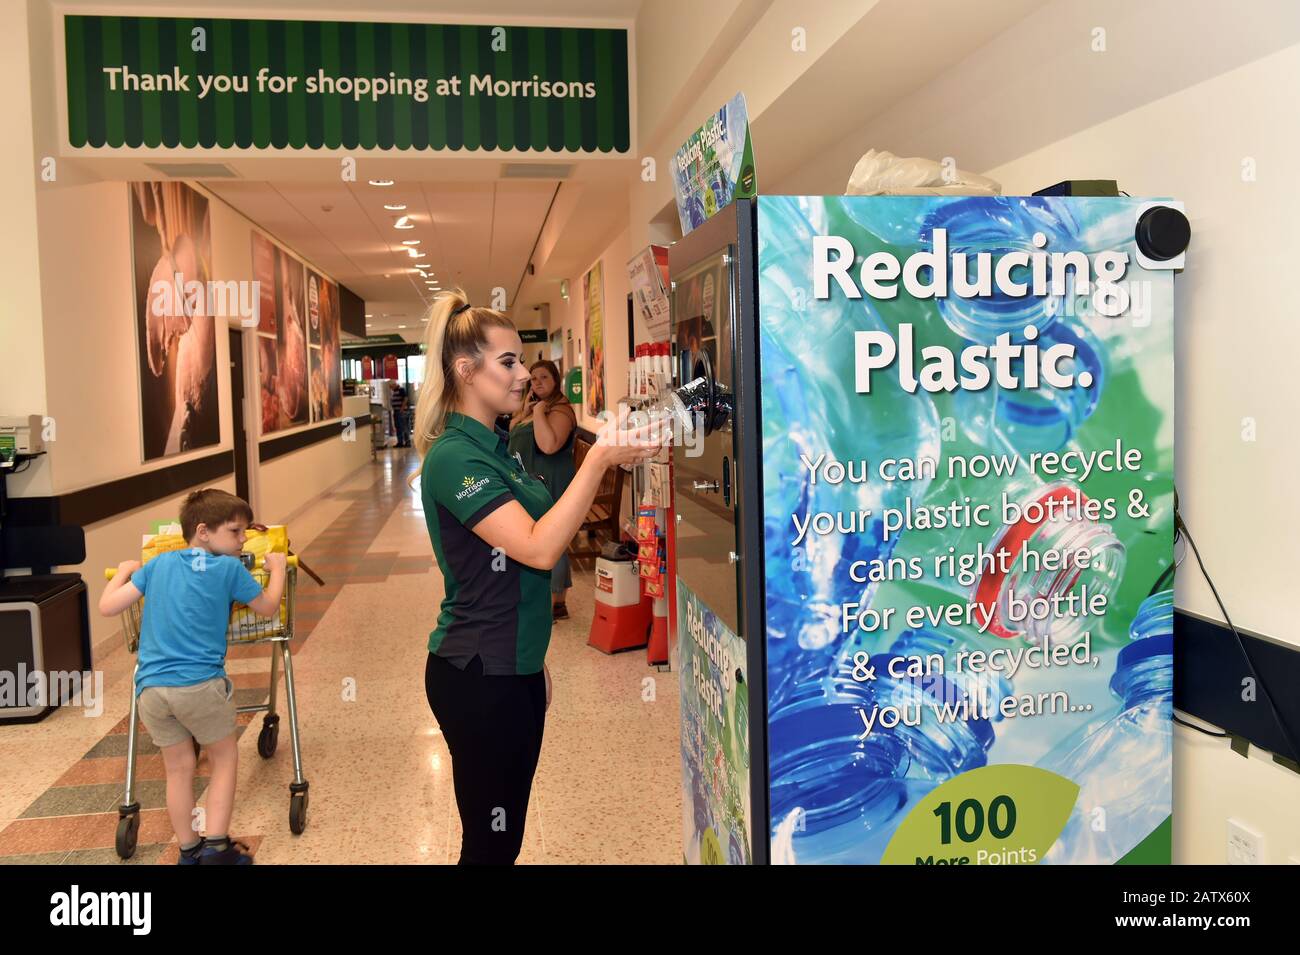 Die Supermärkte von Morrisons trimpfen einen umgekehrten Automaten im Laden, damit Kunden leere Plastikflaschen einlegen und Prämienpunkte erhalten. Stockfoto